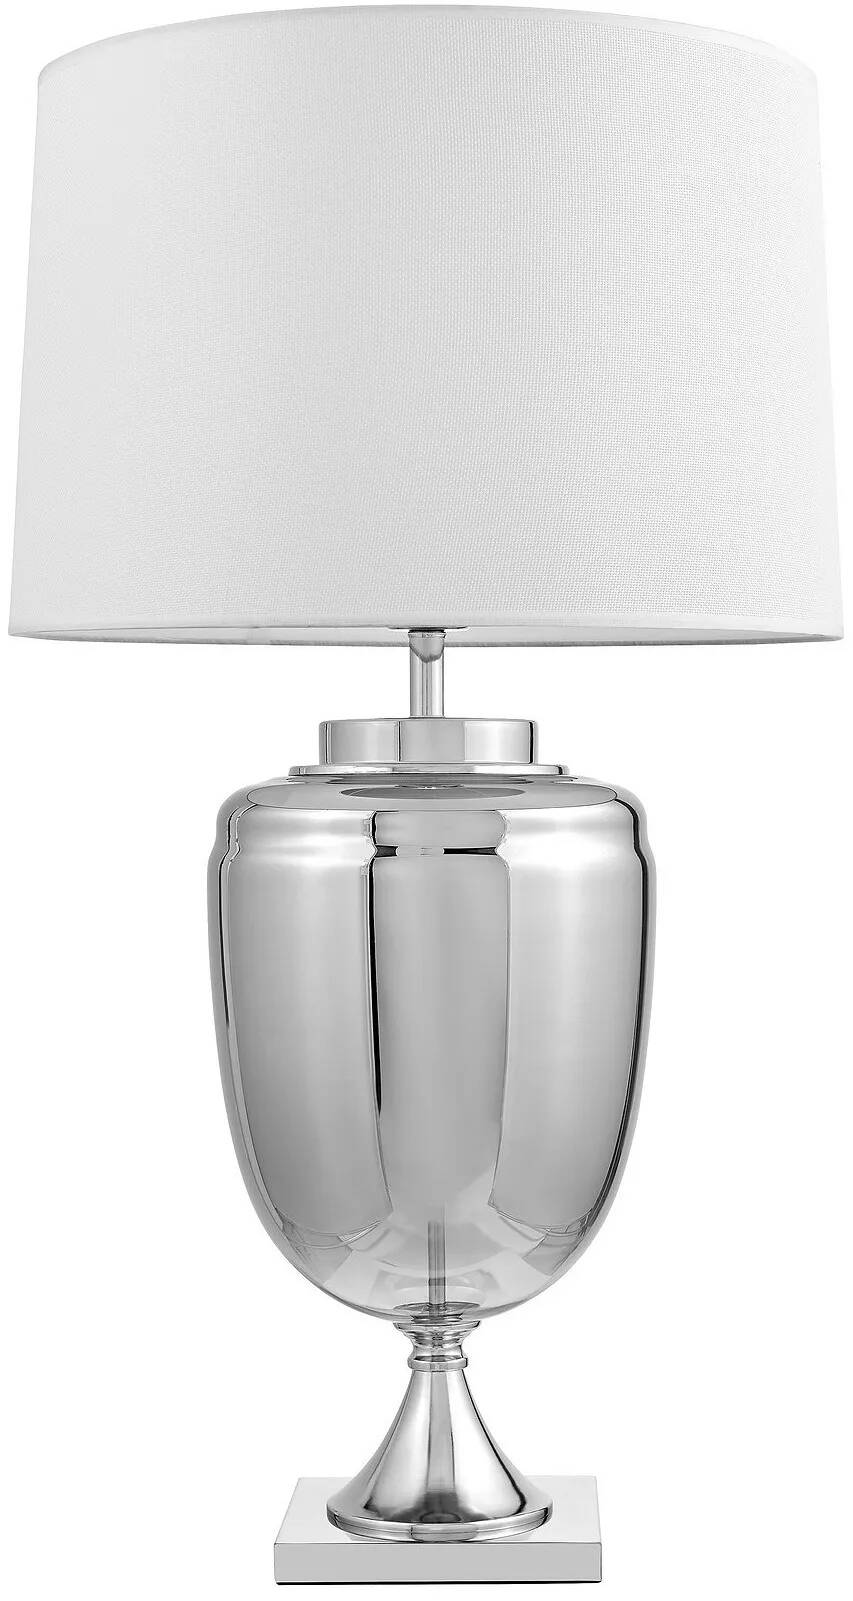 Lampe de table en tissu blanc et métal chromé